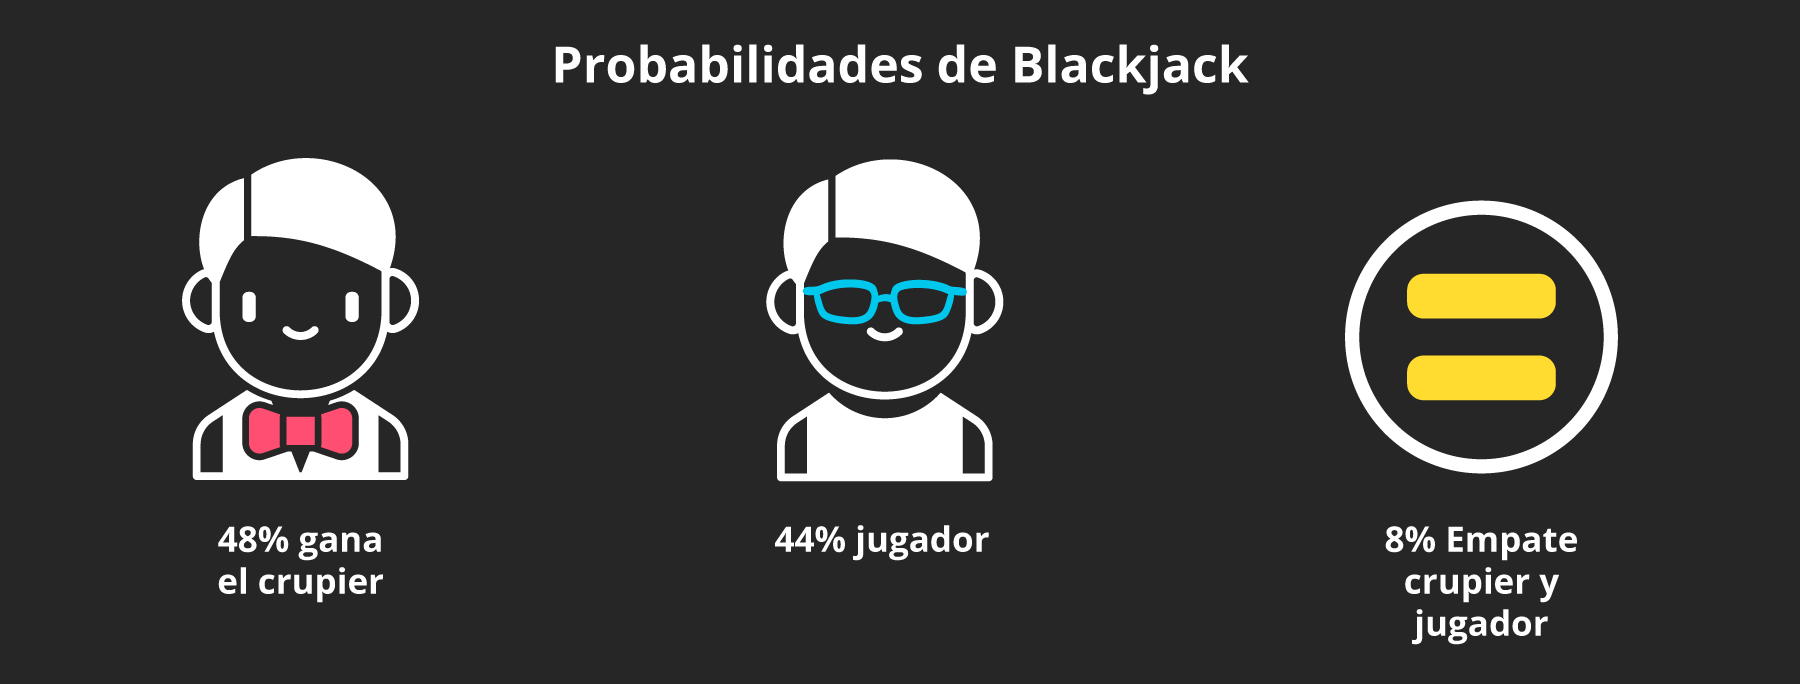 Probabilidades de blackjack